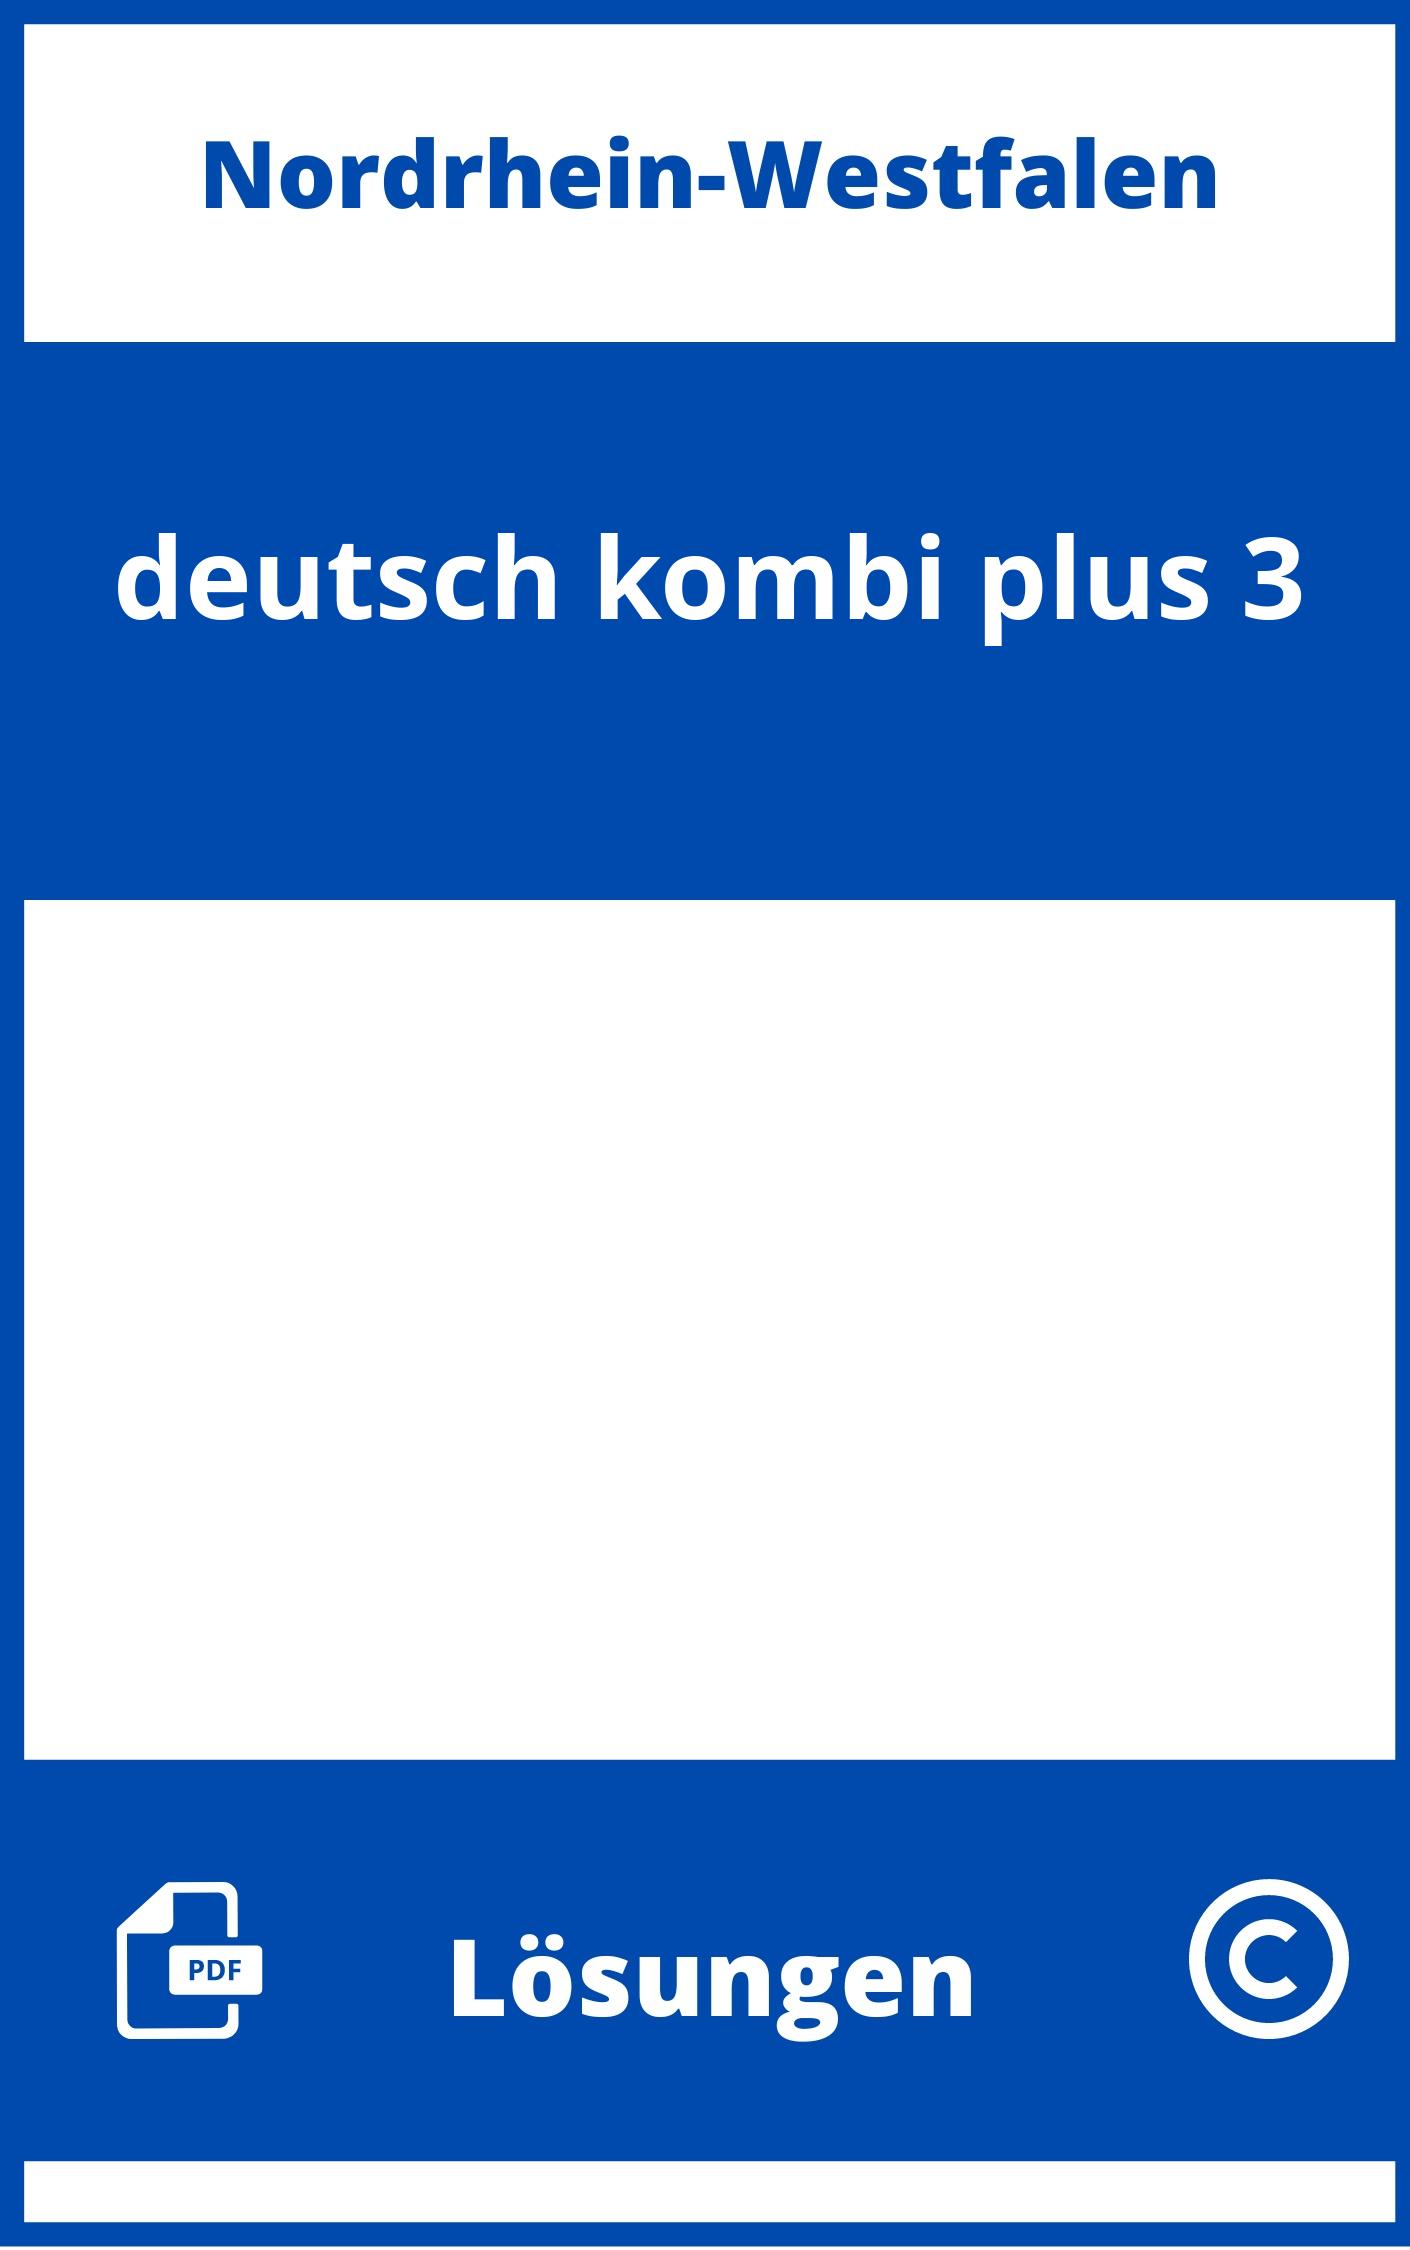 deutsch.kombi plus 3 Lösungen NRW PDF